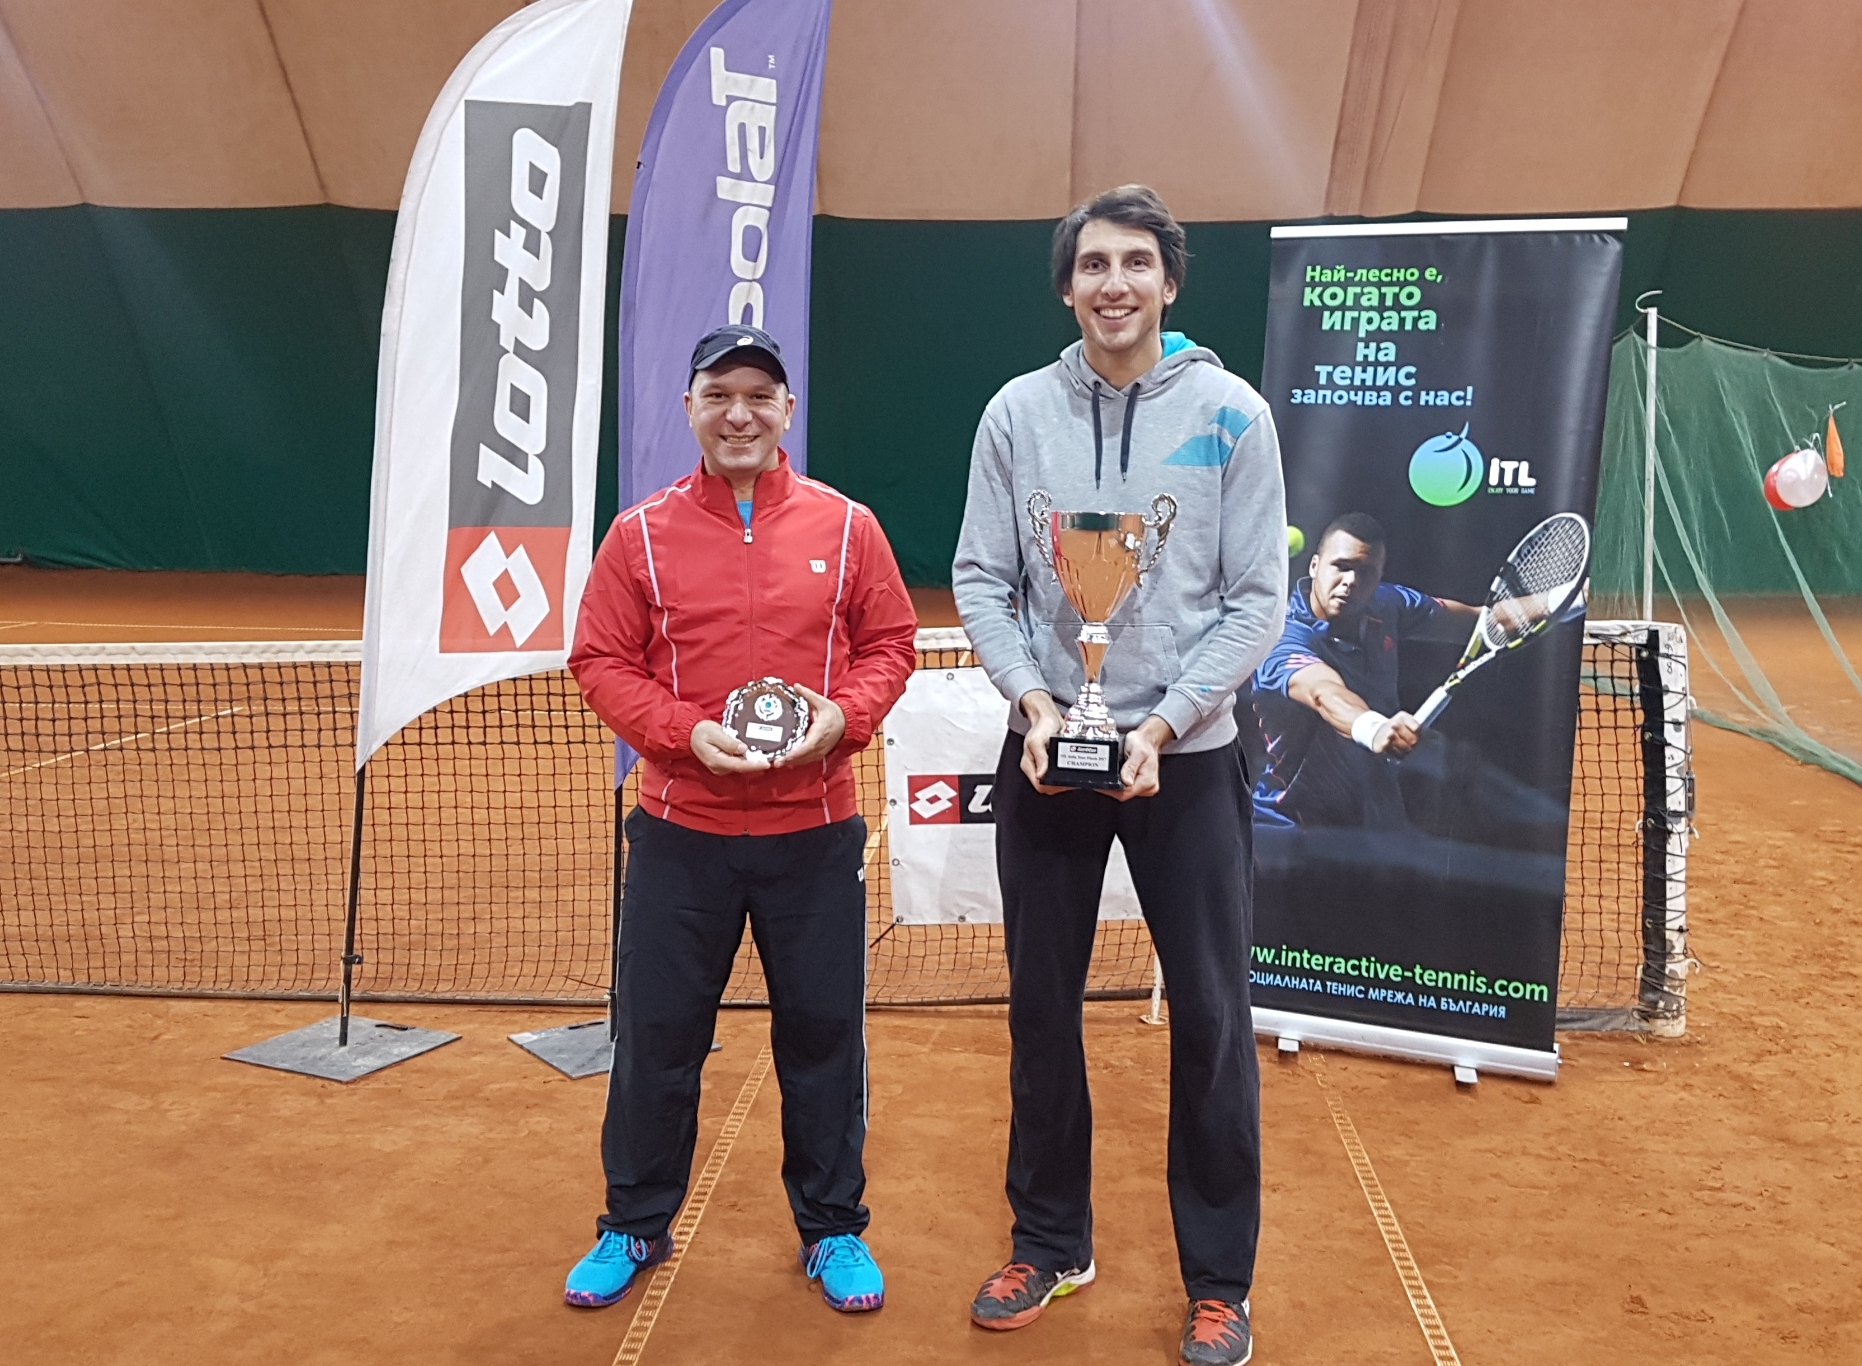 Едиз Батран спечели финалите на Интерактив тенис за годината, но